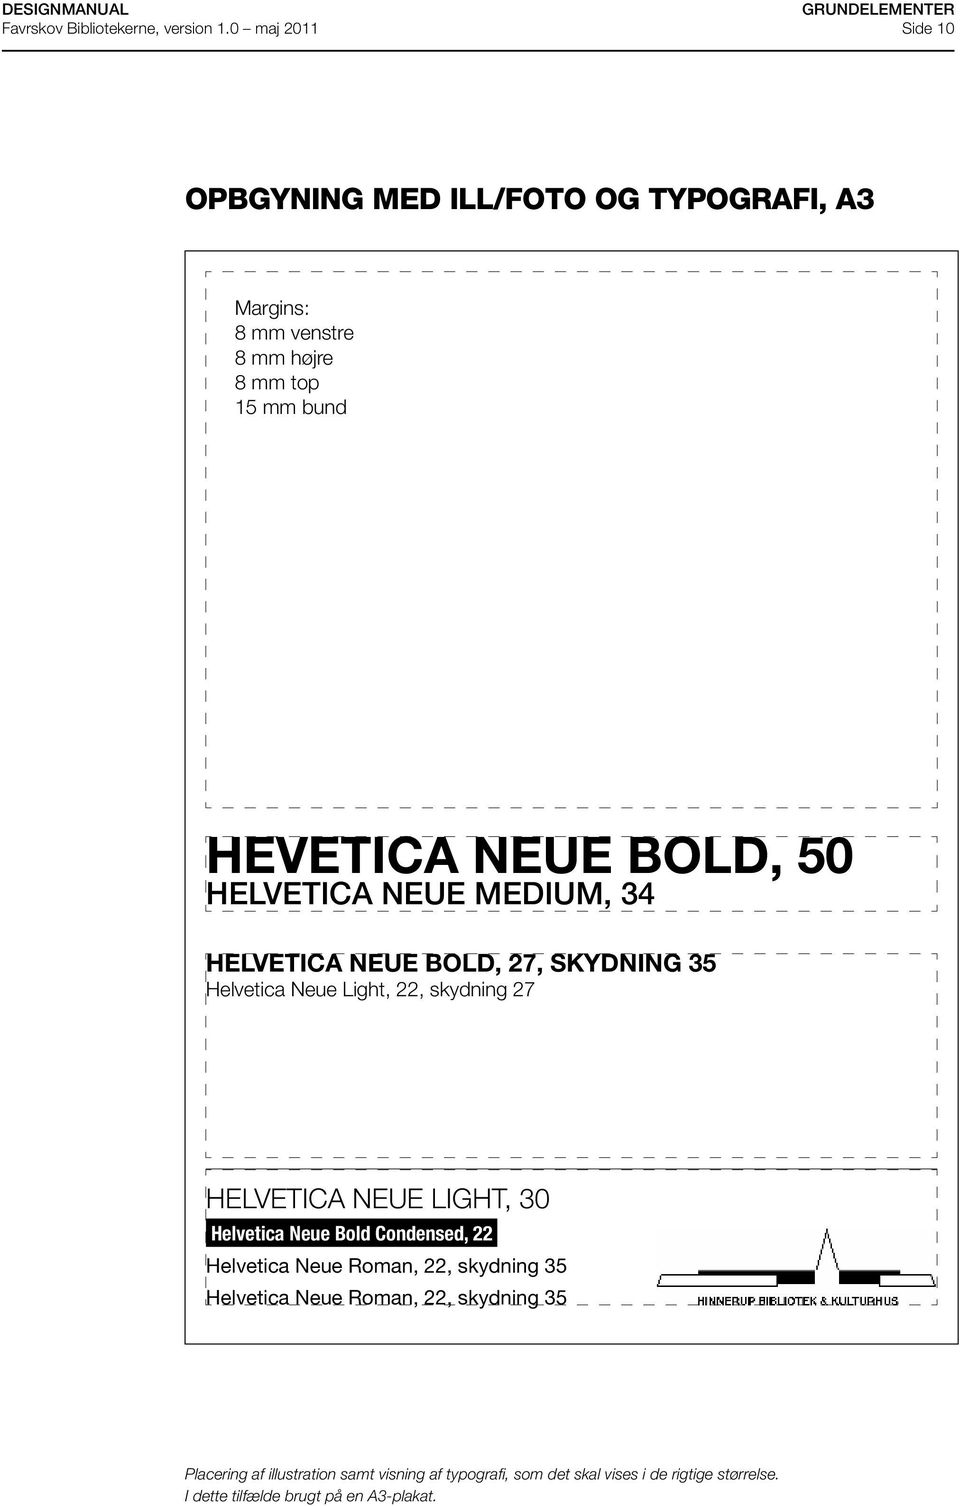 Helvetica Neue Bold Condensed, 22 Helvetica Neue Roman, 22, skydning 35 Helvetica Neue Roman, 22, skydning 35 Lise Frølund Farvede